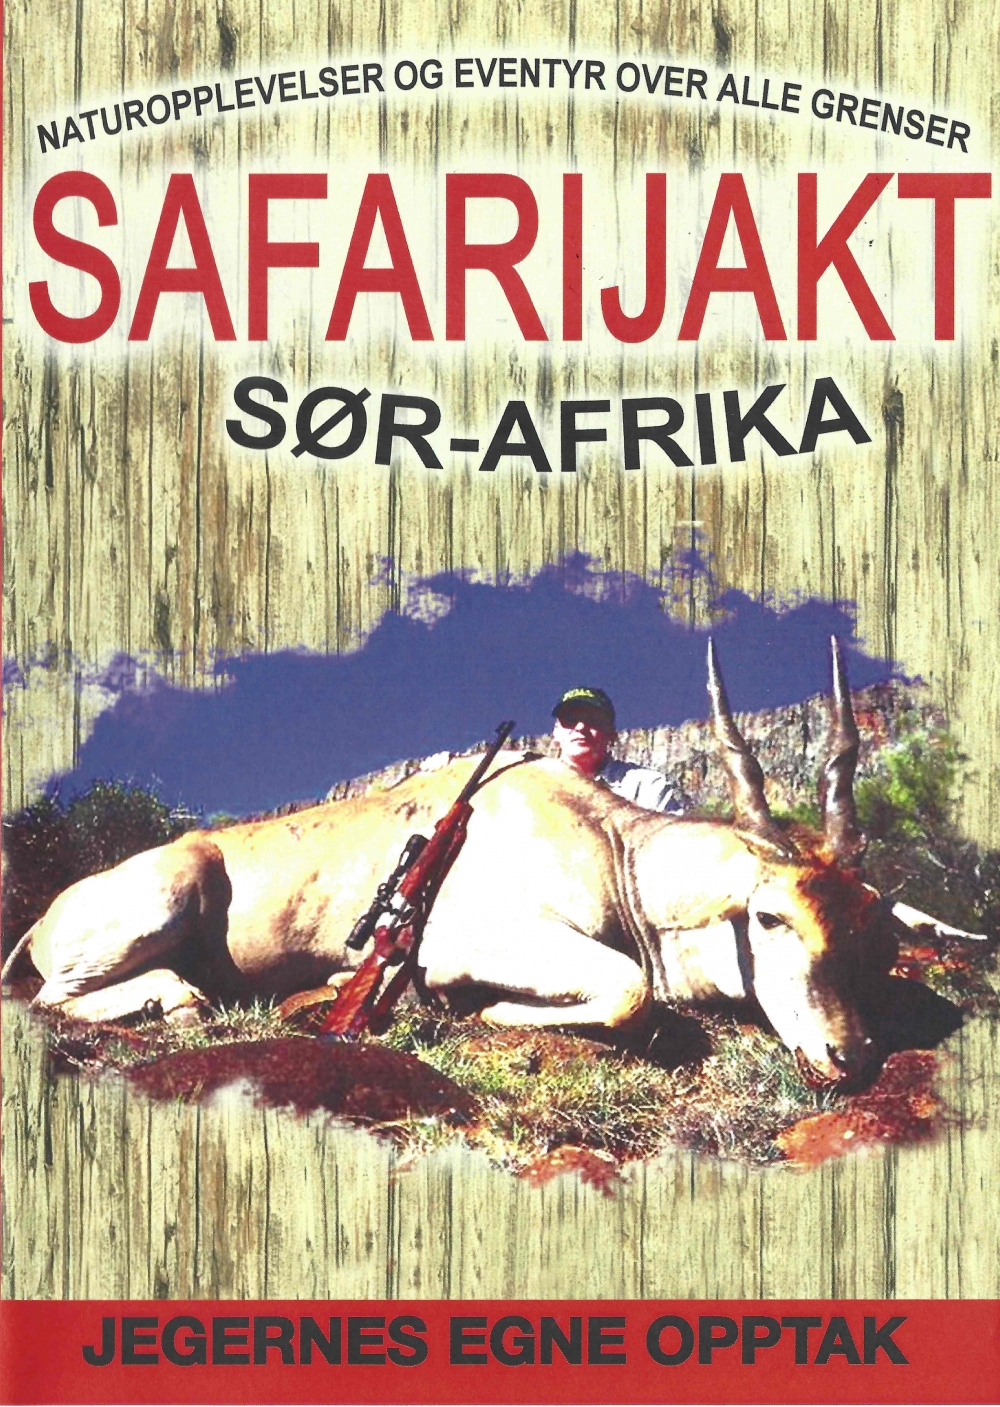 Nostalgi film fra norske jagere på jakt i Sør-Afrika i 2004.